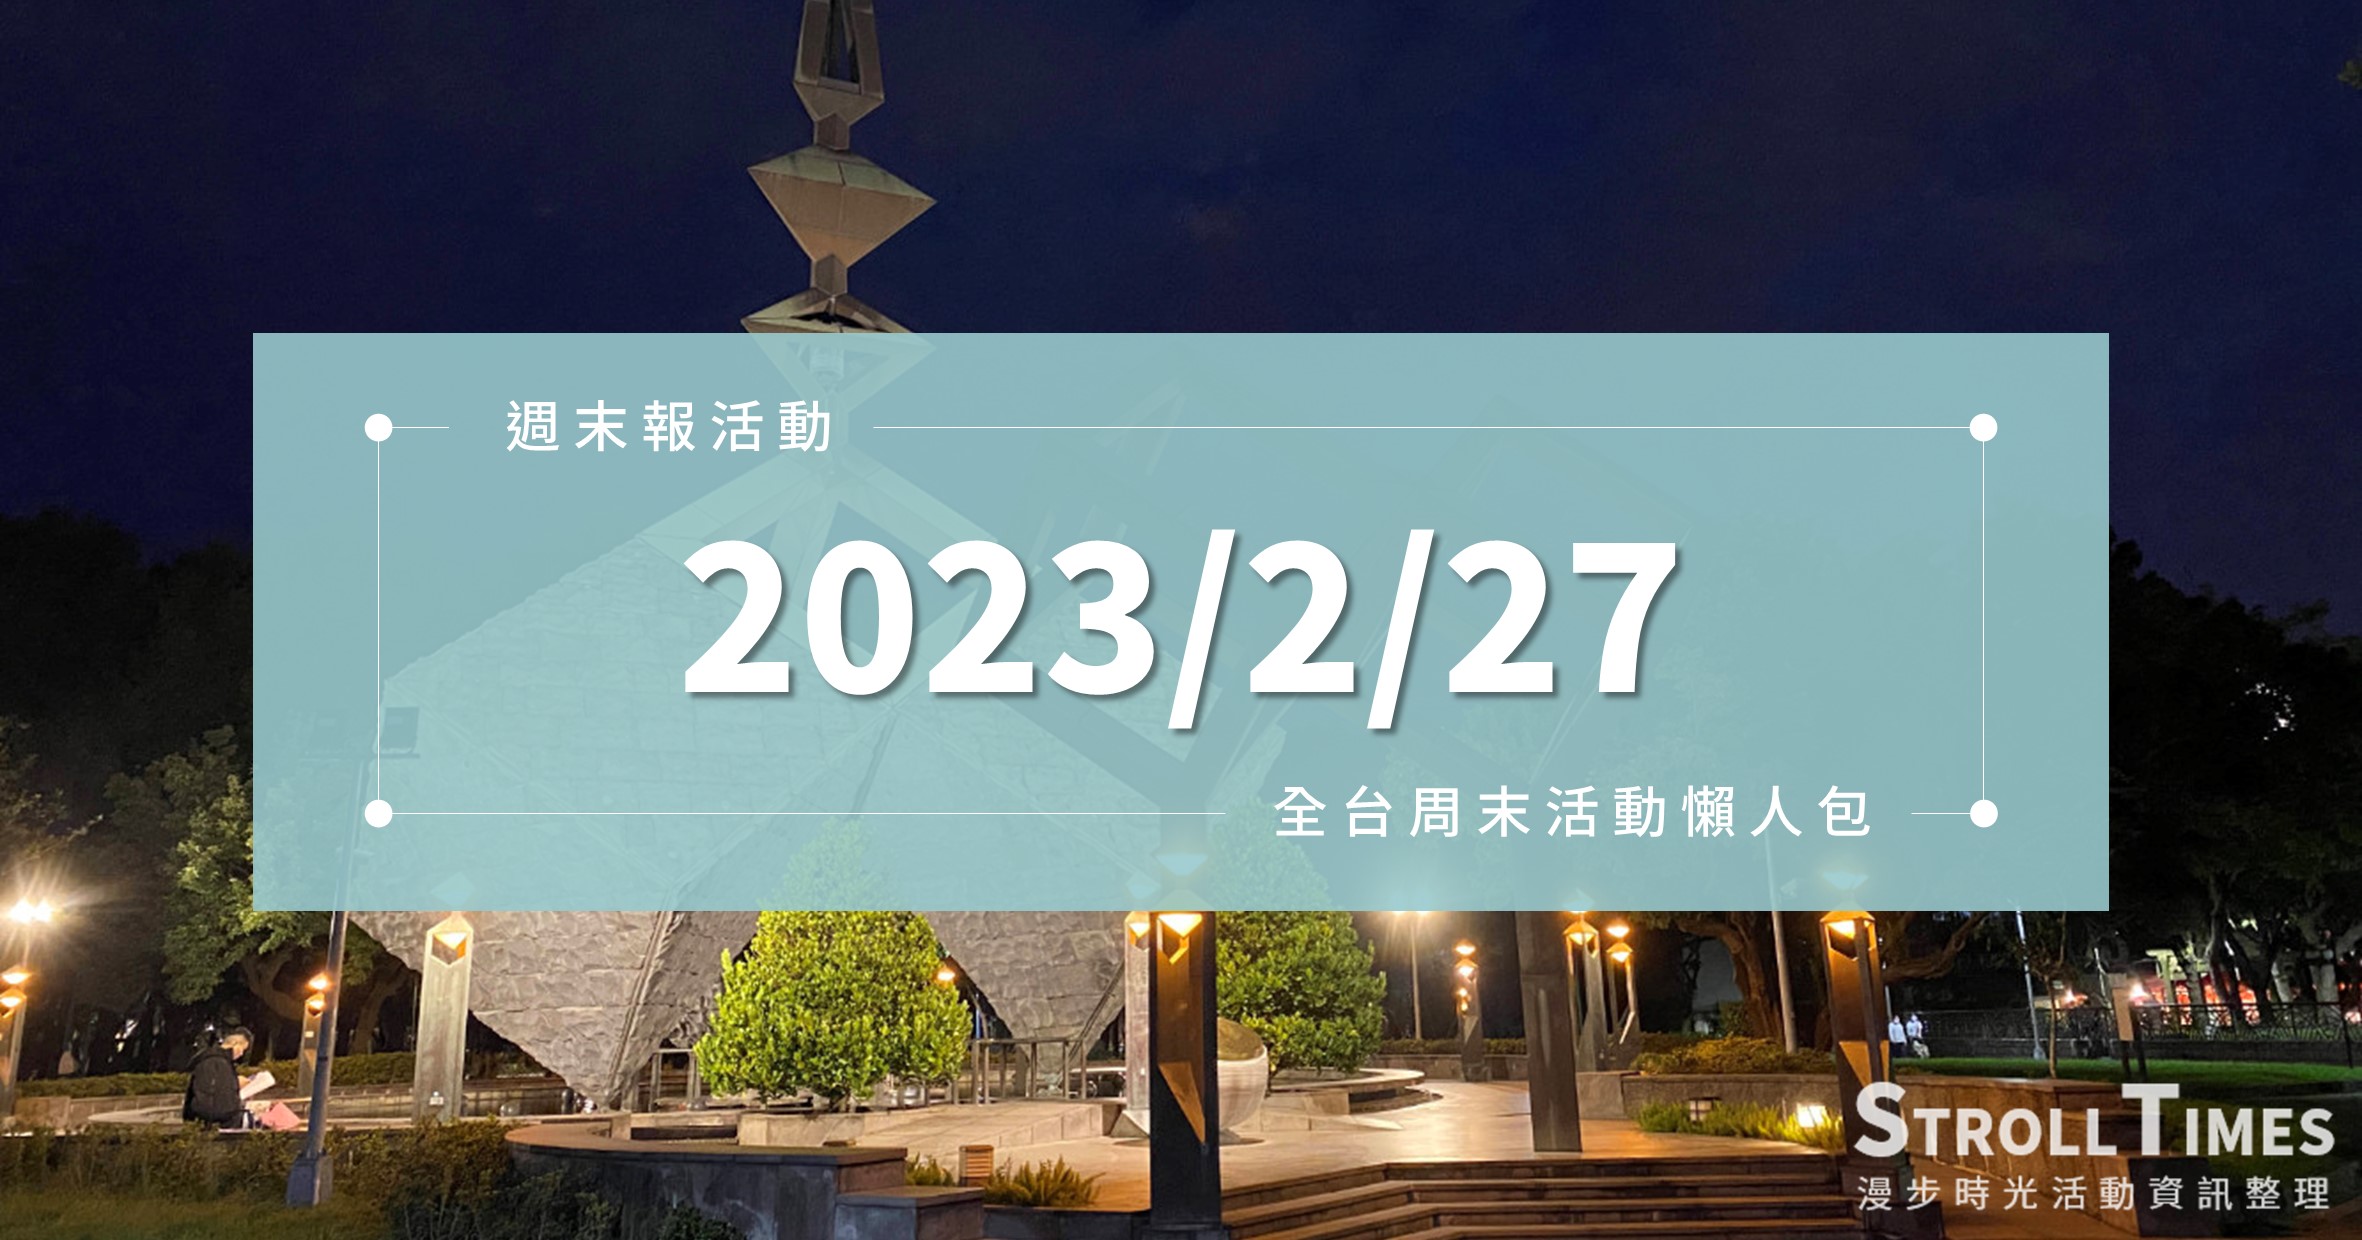 週末活動》全台「2023/2/27」二二八連假活動整理 @漫步時光